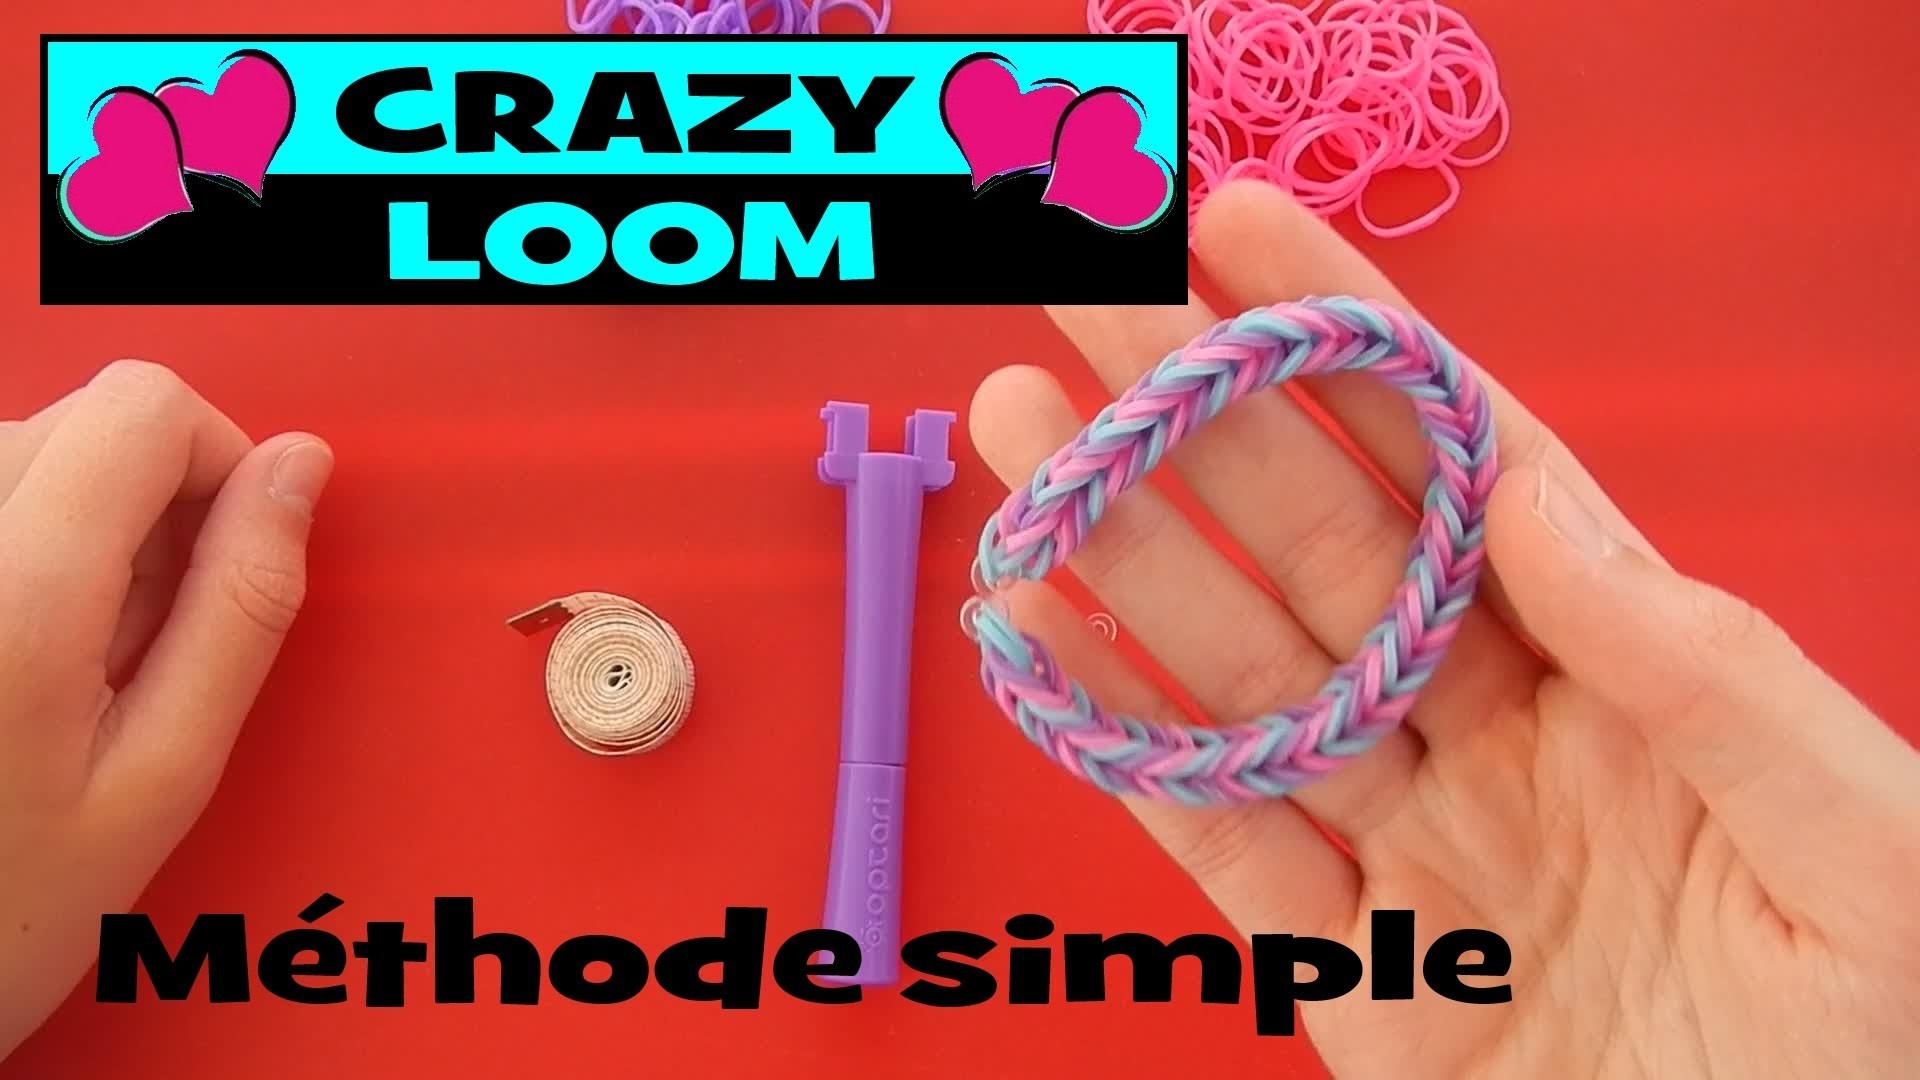 Crazy loom : le plus simple des bracelets rainbow loom (tuto en français)